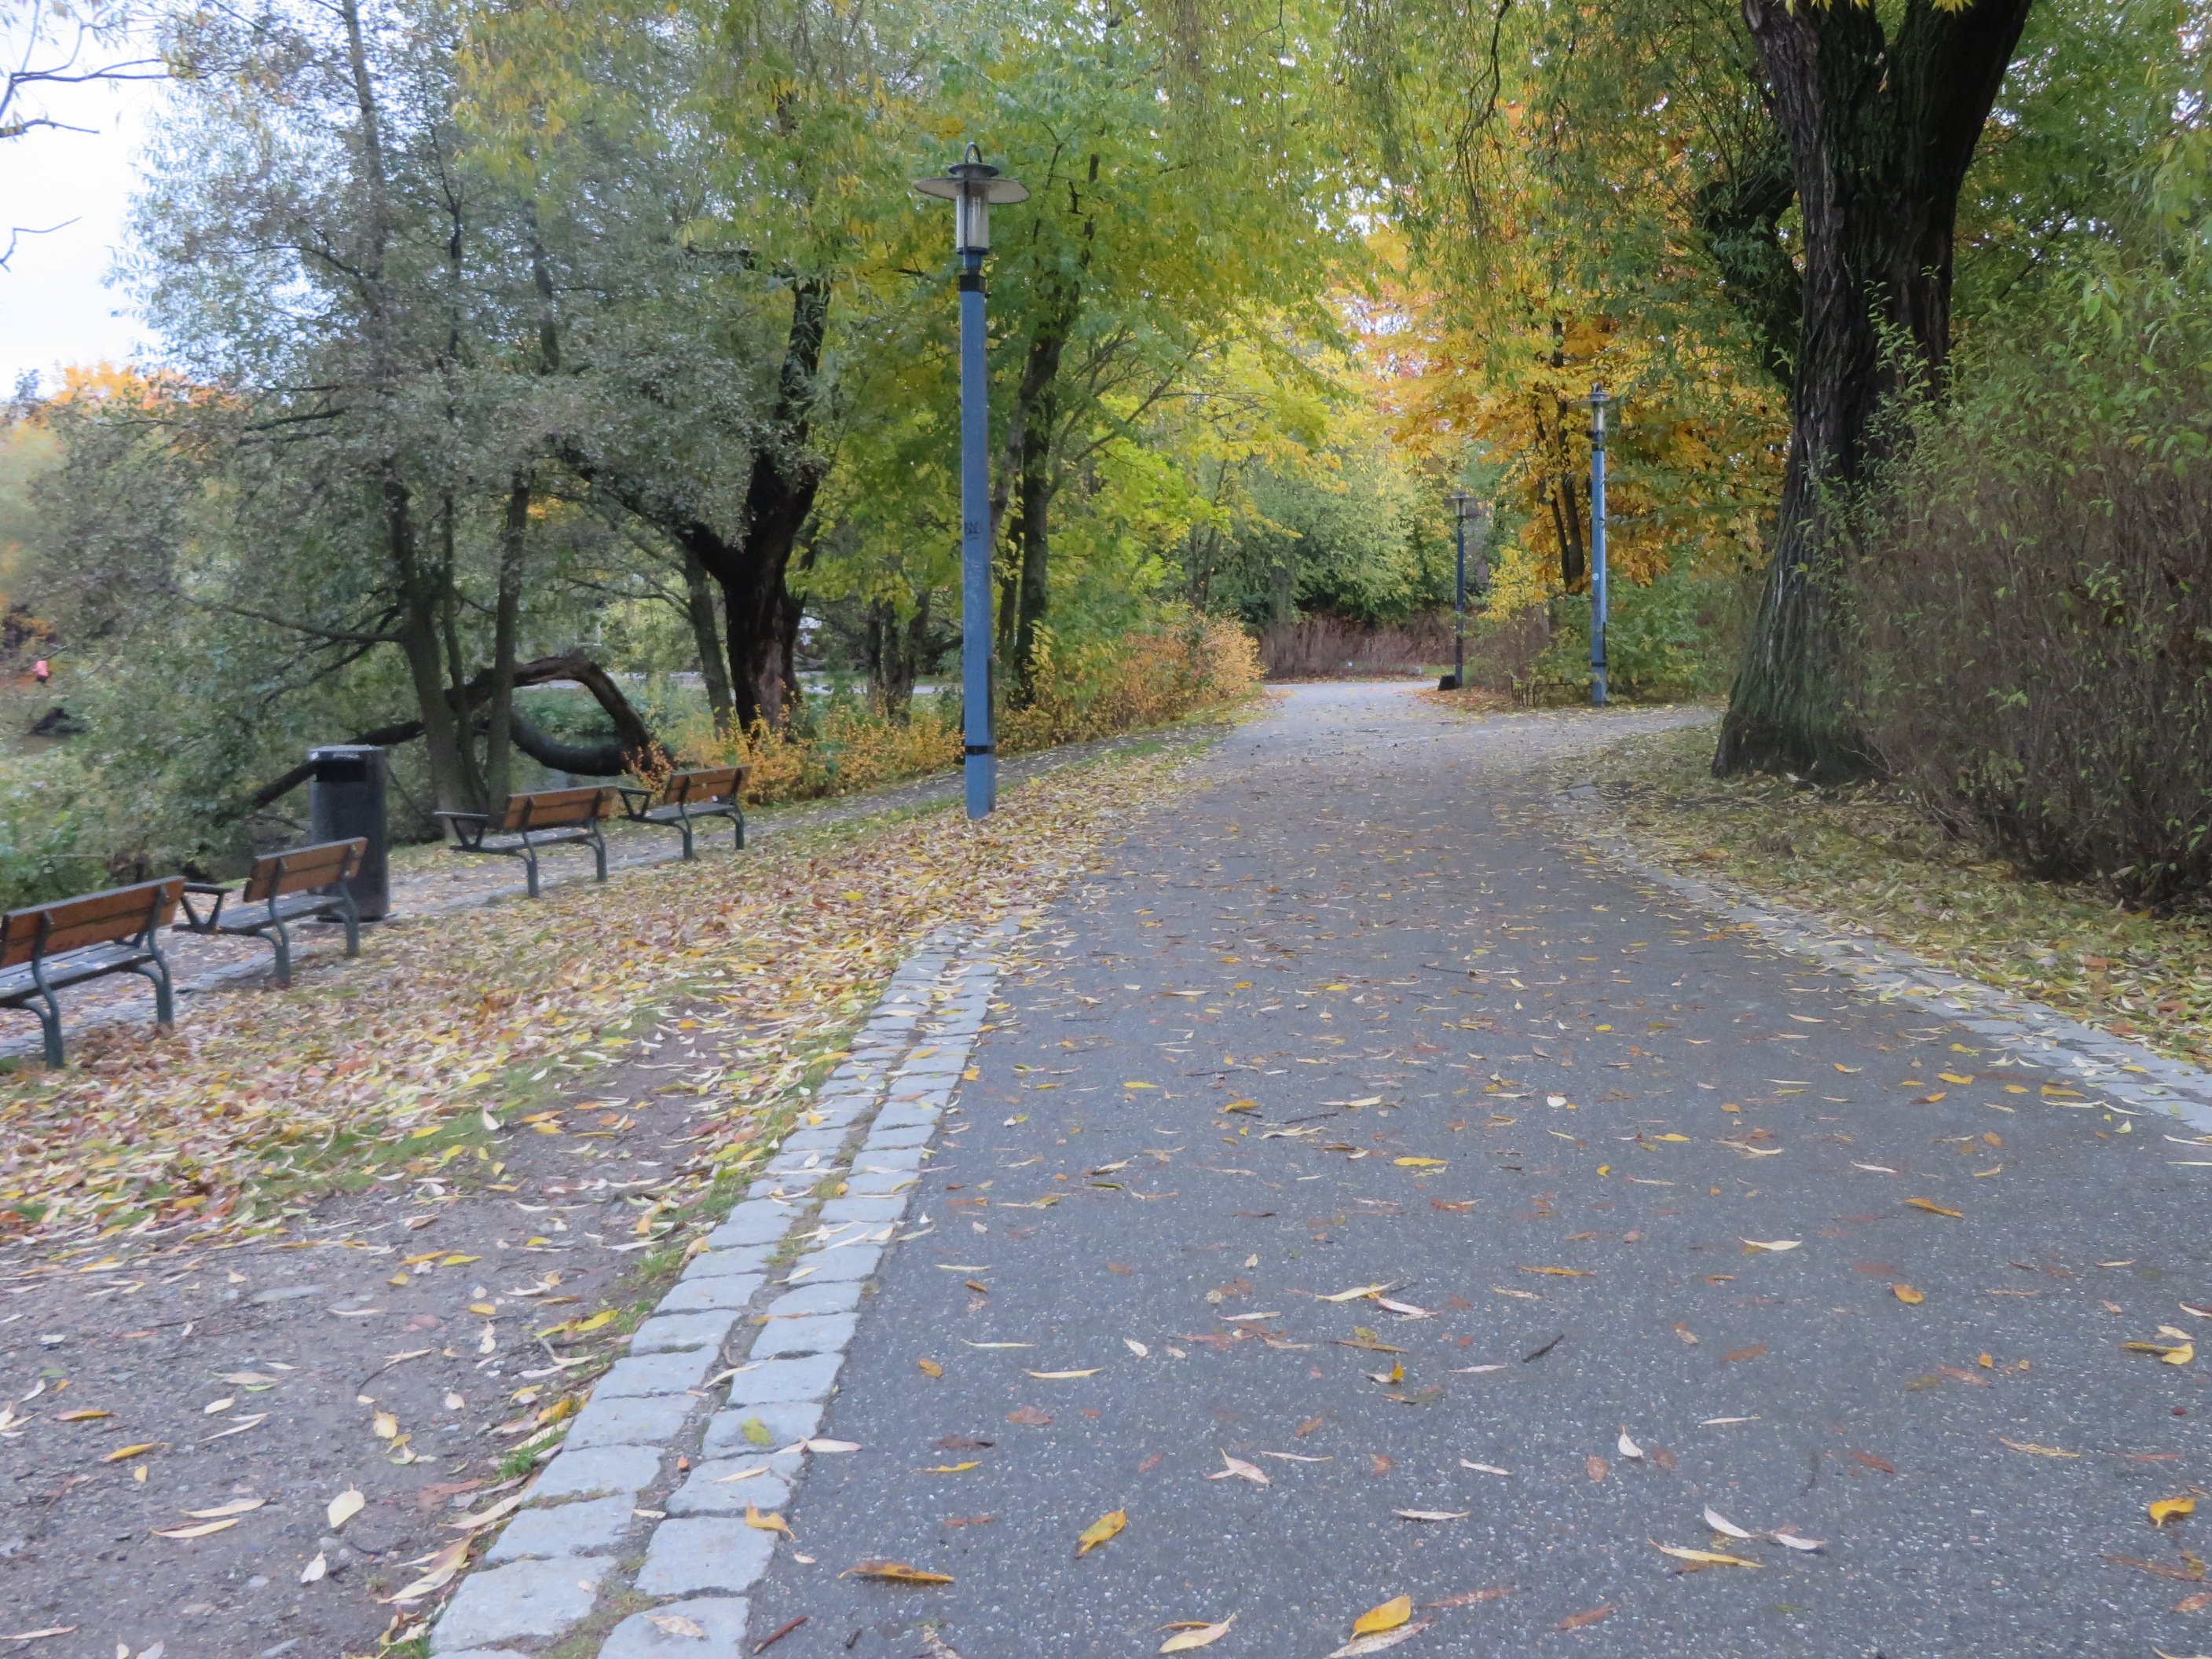 Cykelvägen i närheten av Liljeholmen